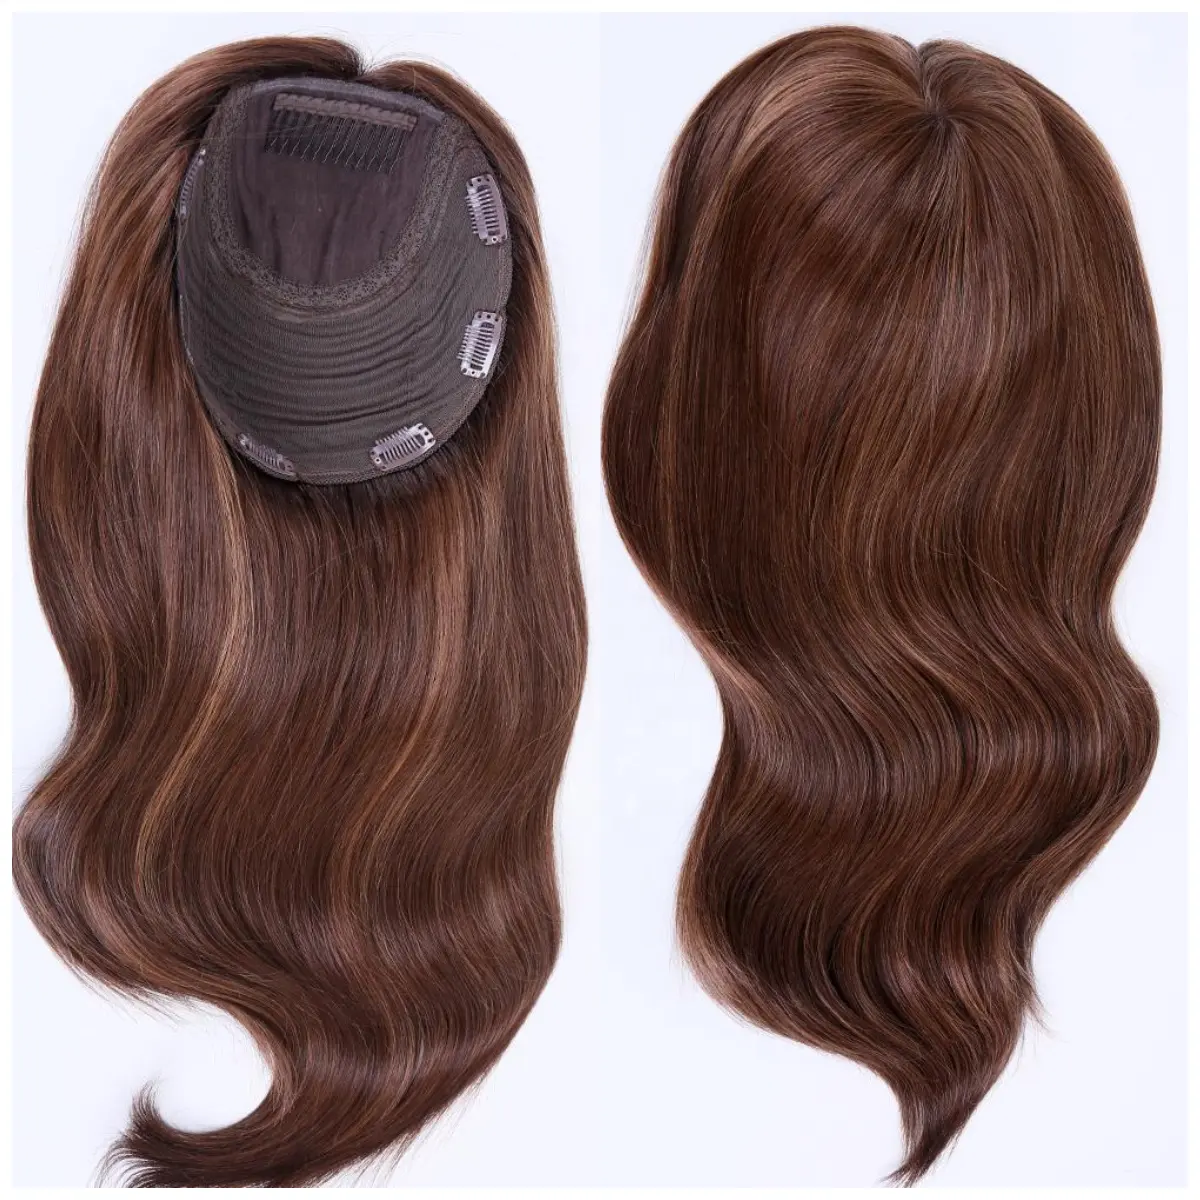 Décoration de cheveux pour femmes, 100% cheveux naturels vierges, à base de soie, style médiéval, haute qualité